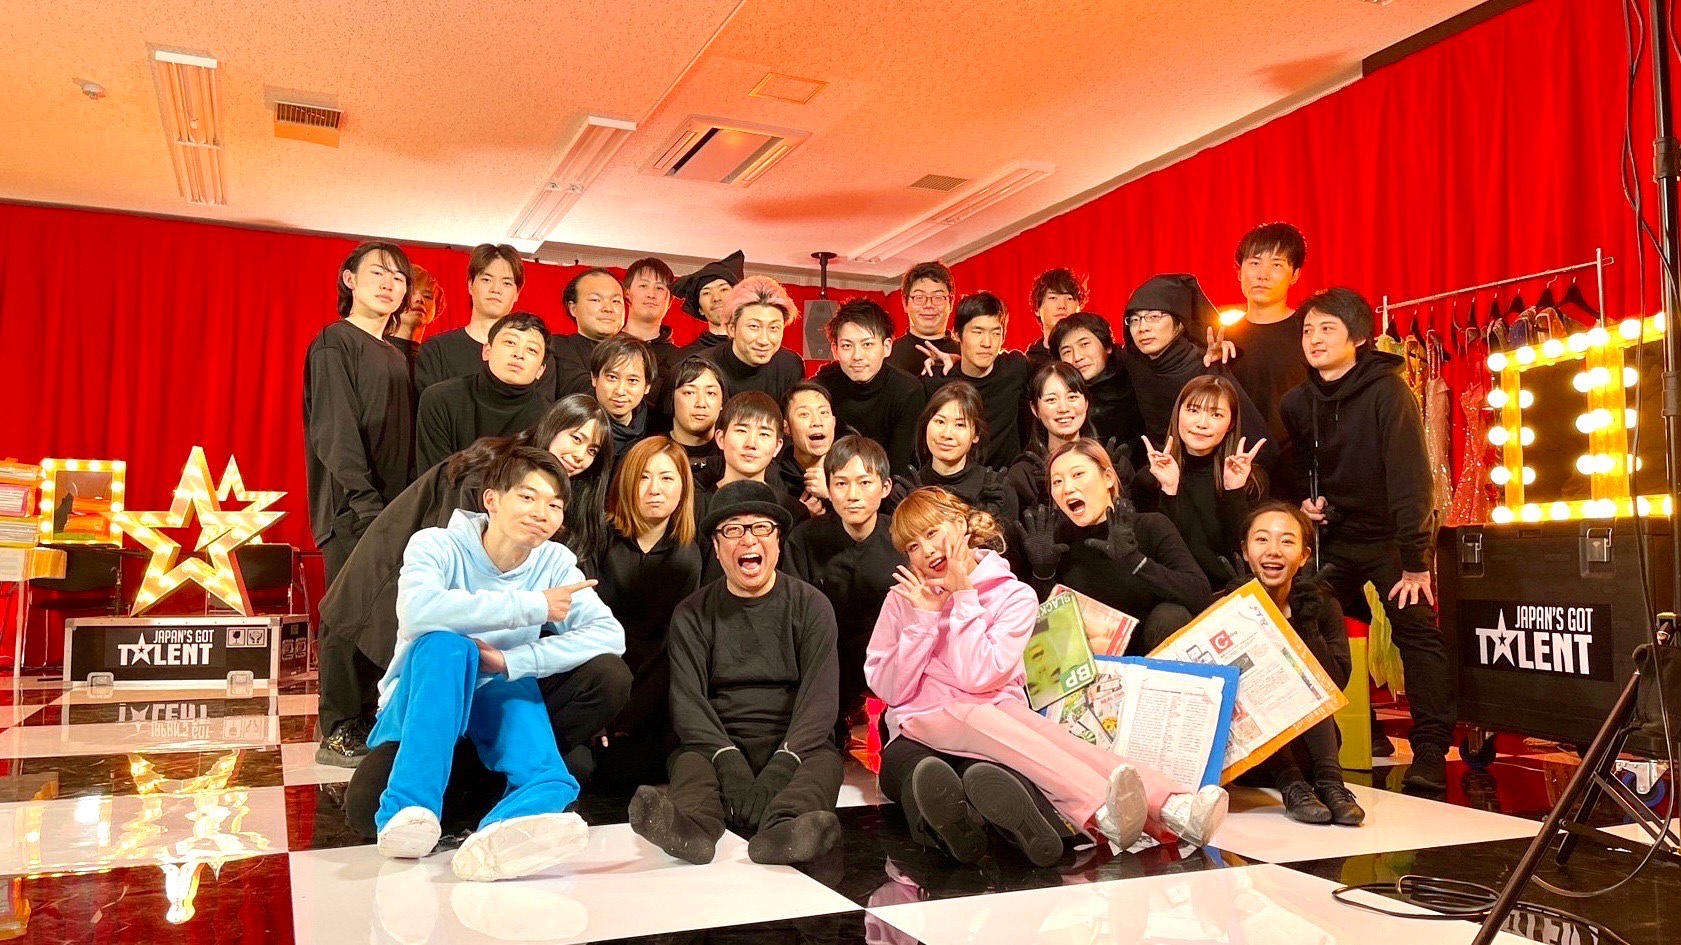 5%BERMUDA 福永ありさ・JUNAの両名、仮装大賞優勝メンバーらによるパフォーマンスチームの一員としてJapan’s Got Talent セミファイナルに出演！